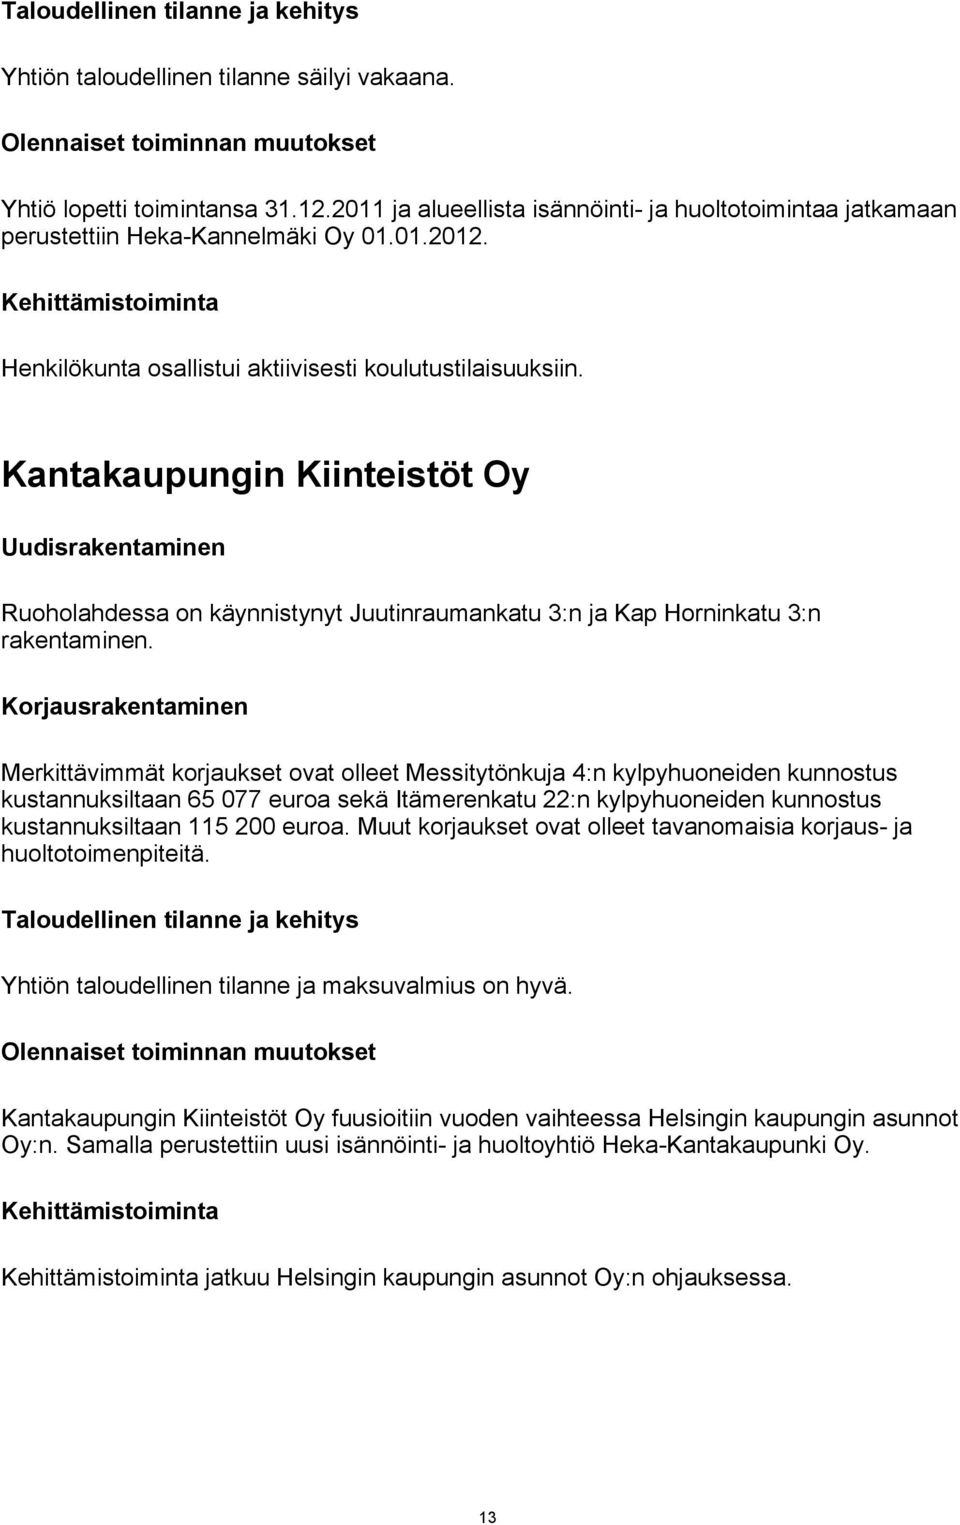 Kantakaupungin Kiinteistöt Oy Uudisrakentaminen Ruoholahdessa on käynnistynyt Juutinraumankatu 3:n ja Kap Horninkatu 3:n rakentaminen.